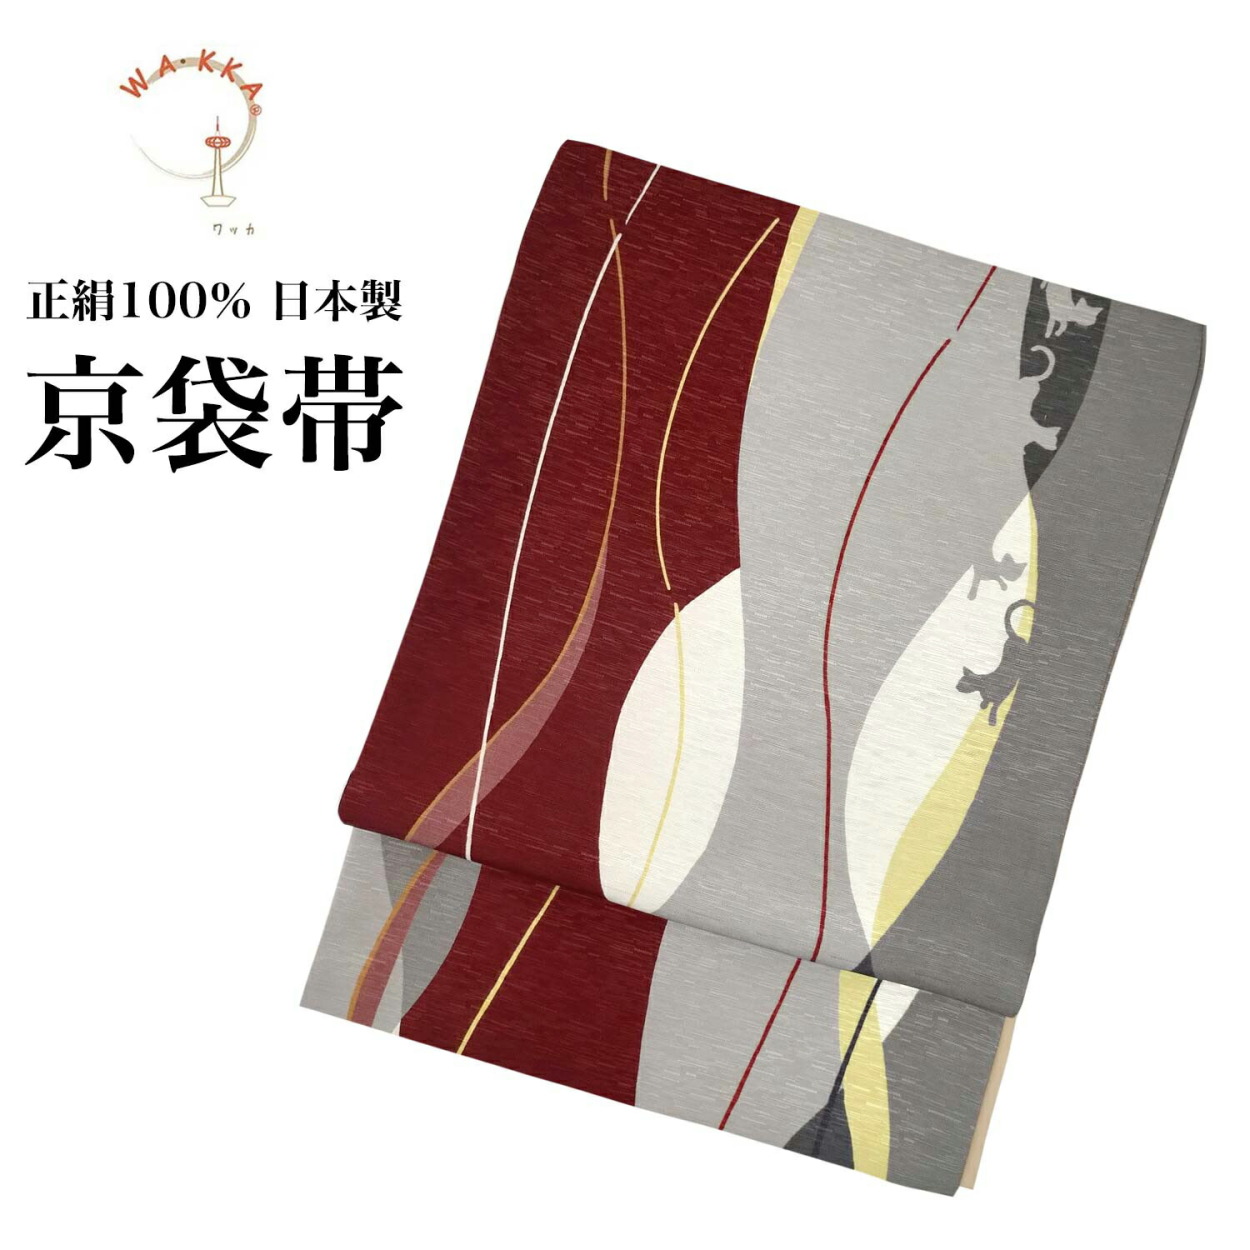 京袋帯 正絹 WAKKA ワッカ WA・KKA 日本製 グレー ワインレッド 赤 猫